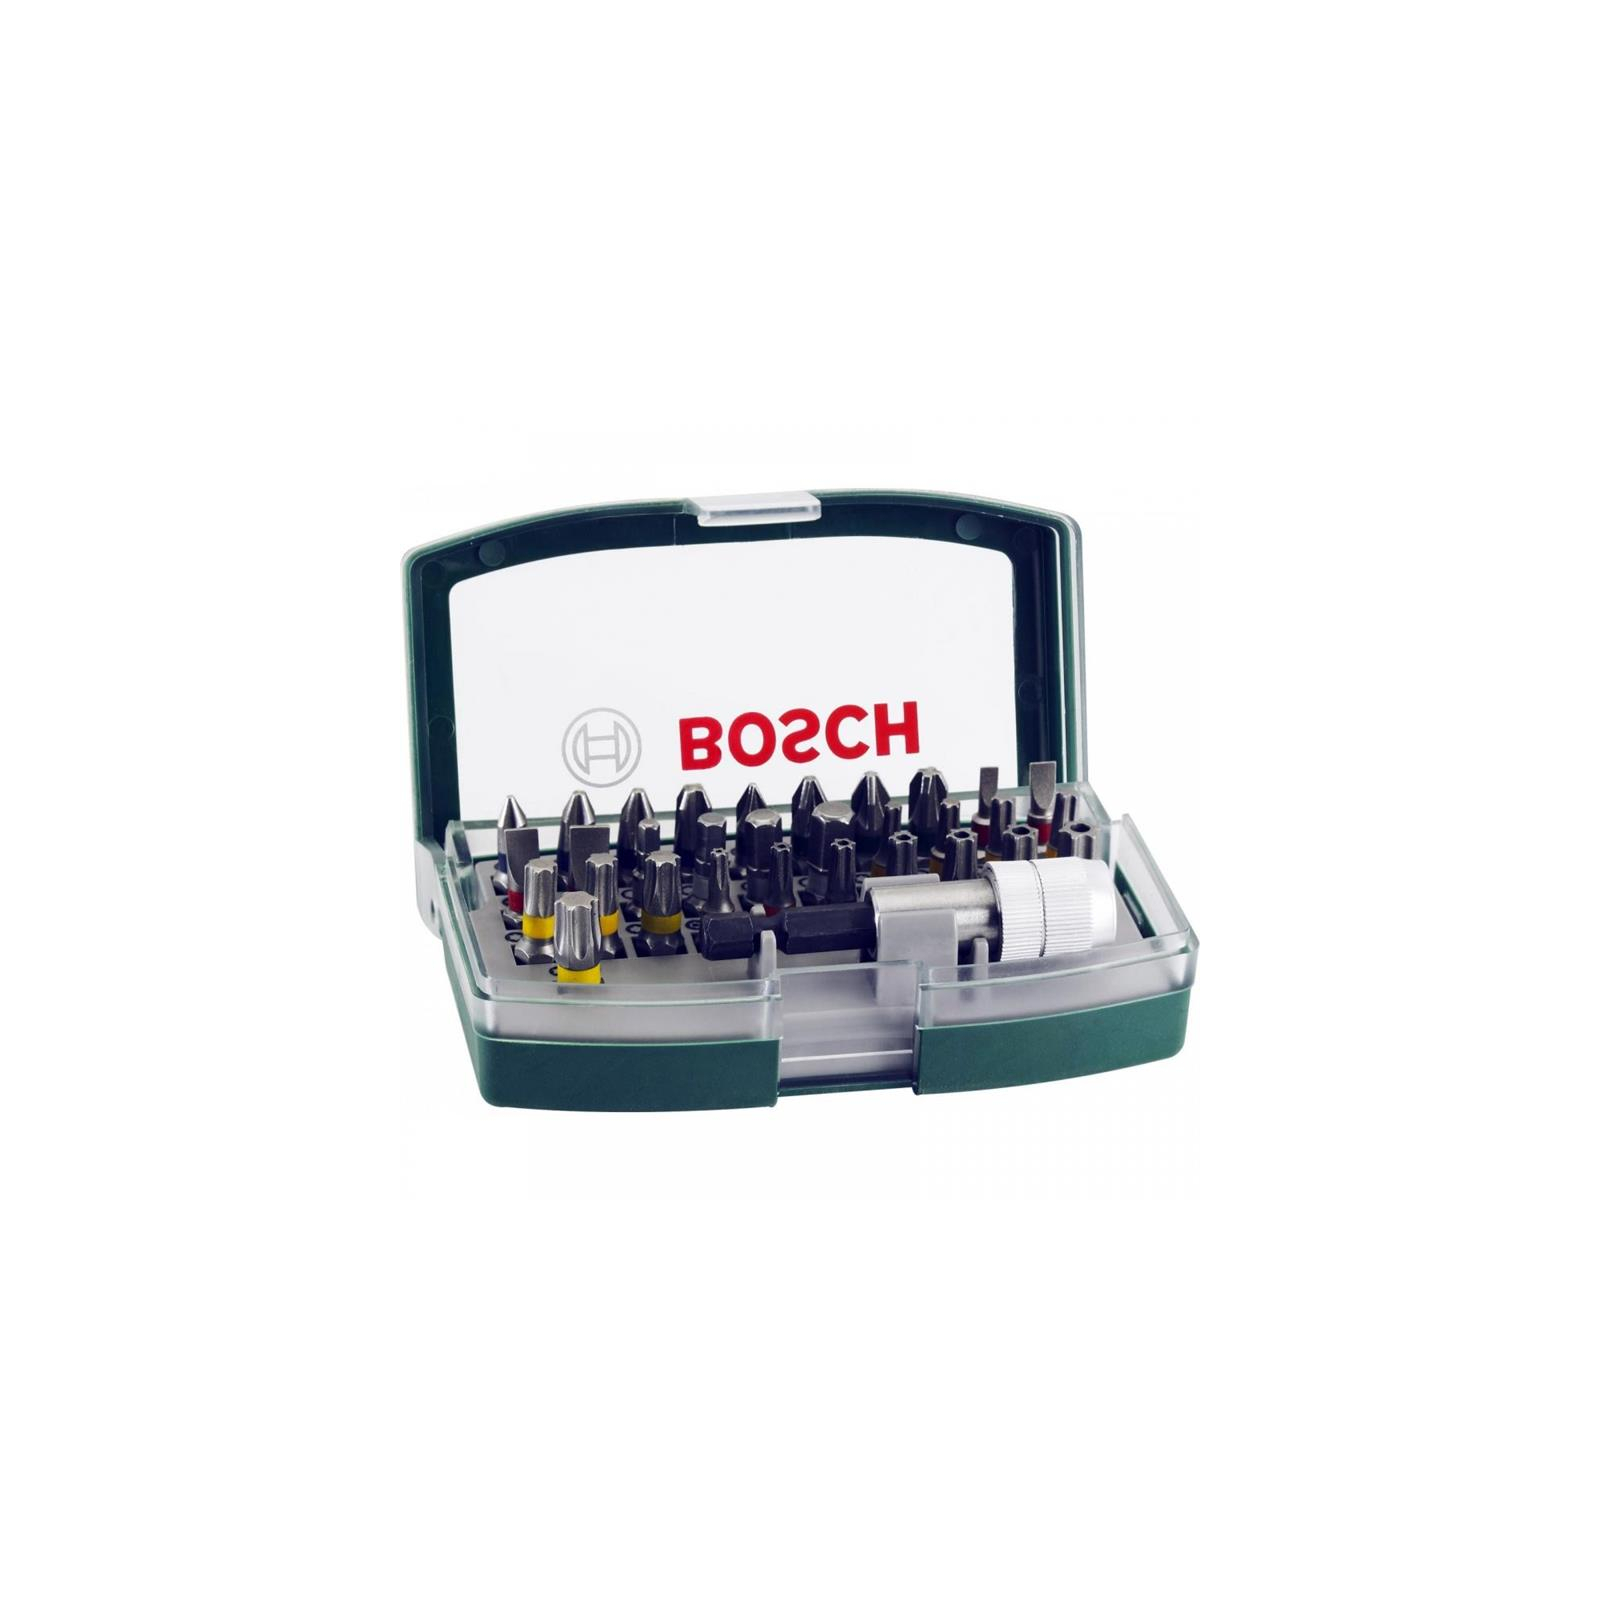 Набор бит Bosch 32 шт + магнитный держатель (2.607.017.063)